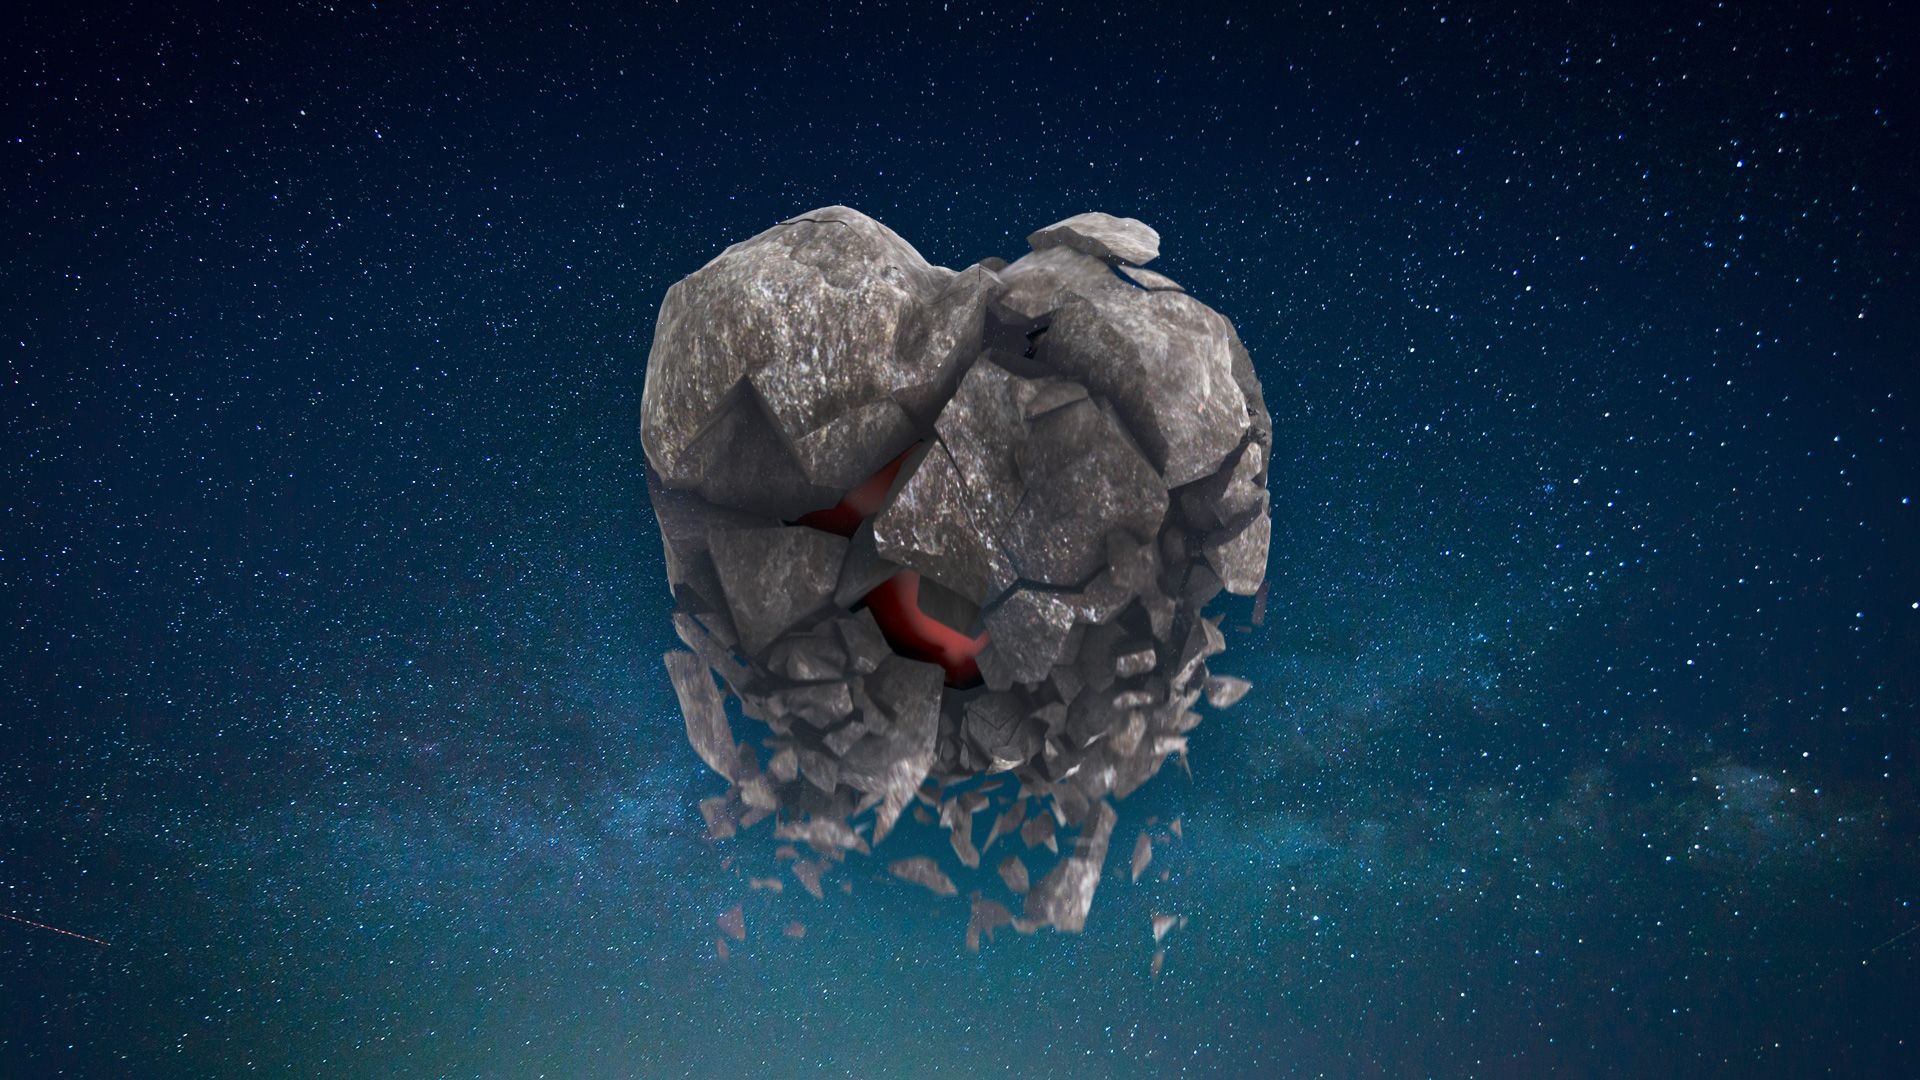 Promotional image for Трагедия нераскаянного сердца